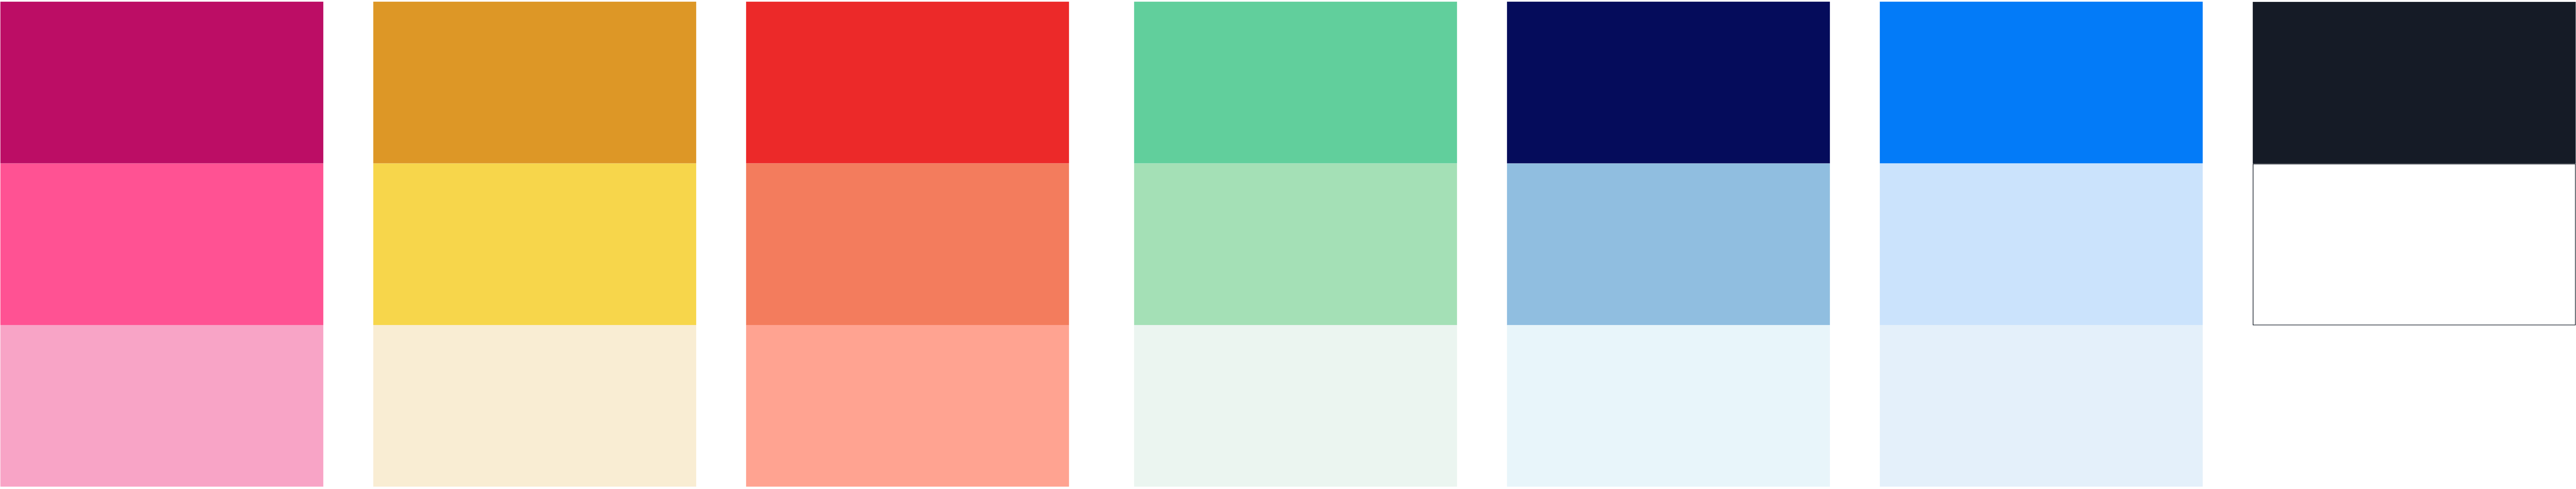 color-palette-01